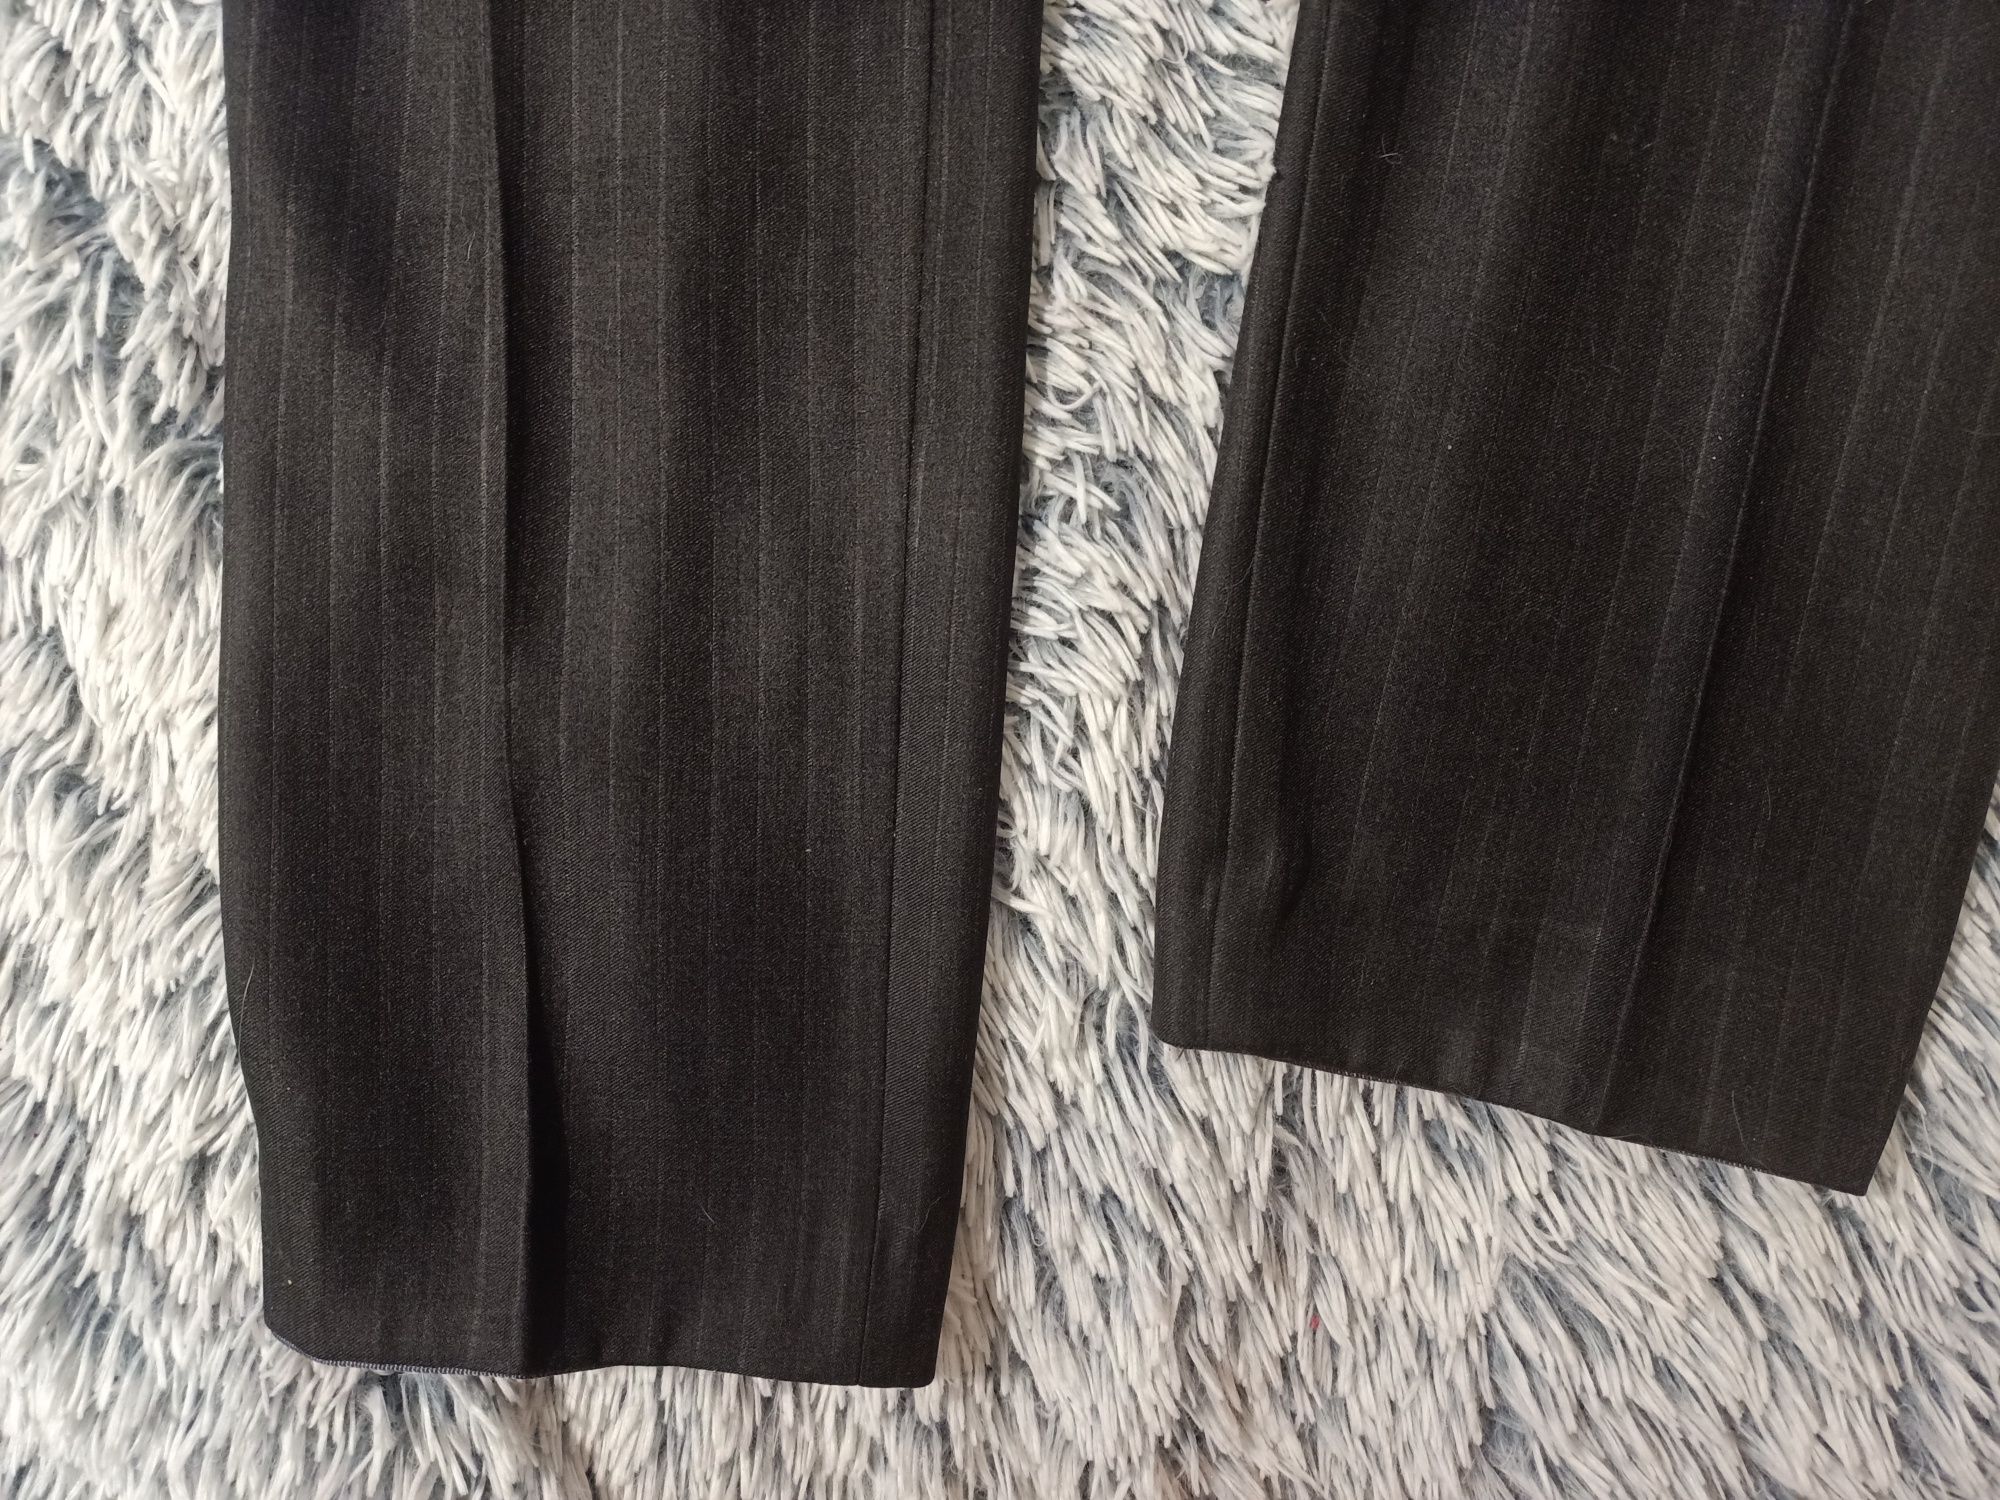 Классический мужской темно-серый костюм, размер- L /48, рост-175 см.